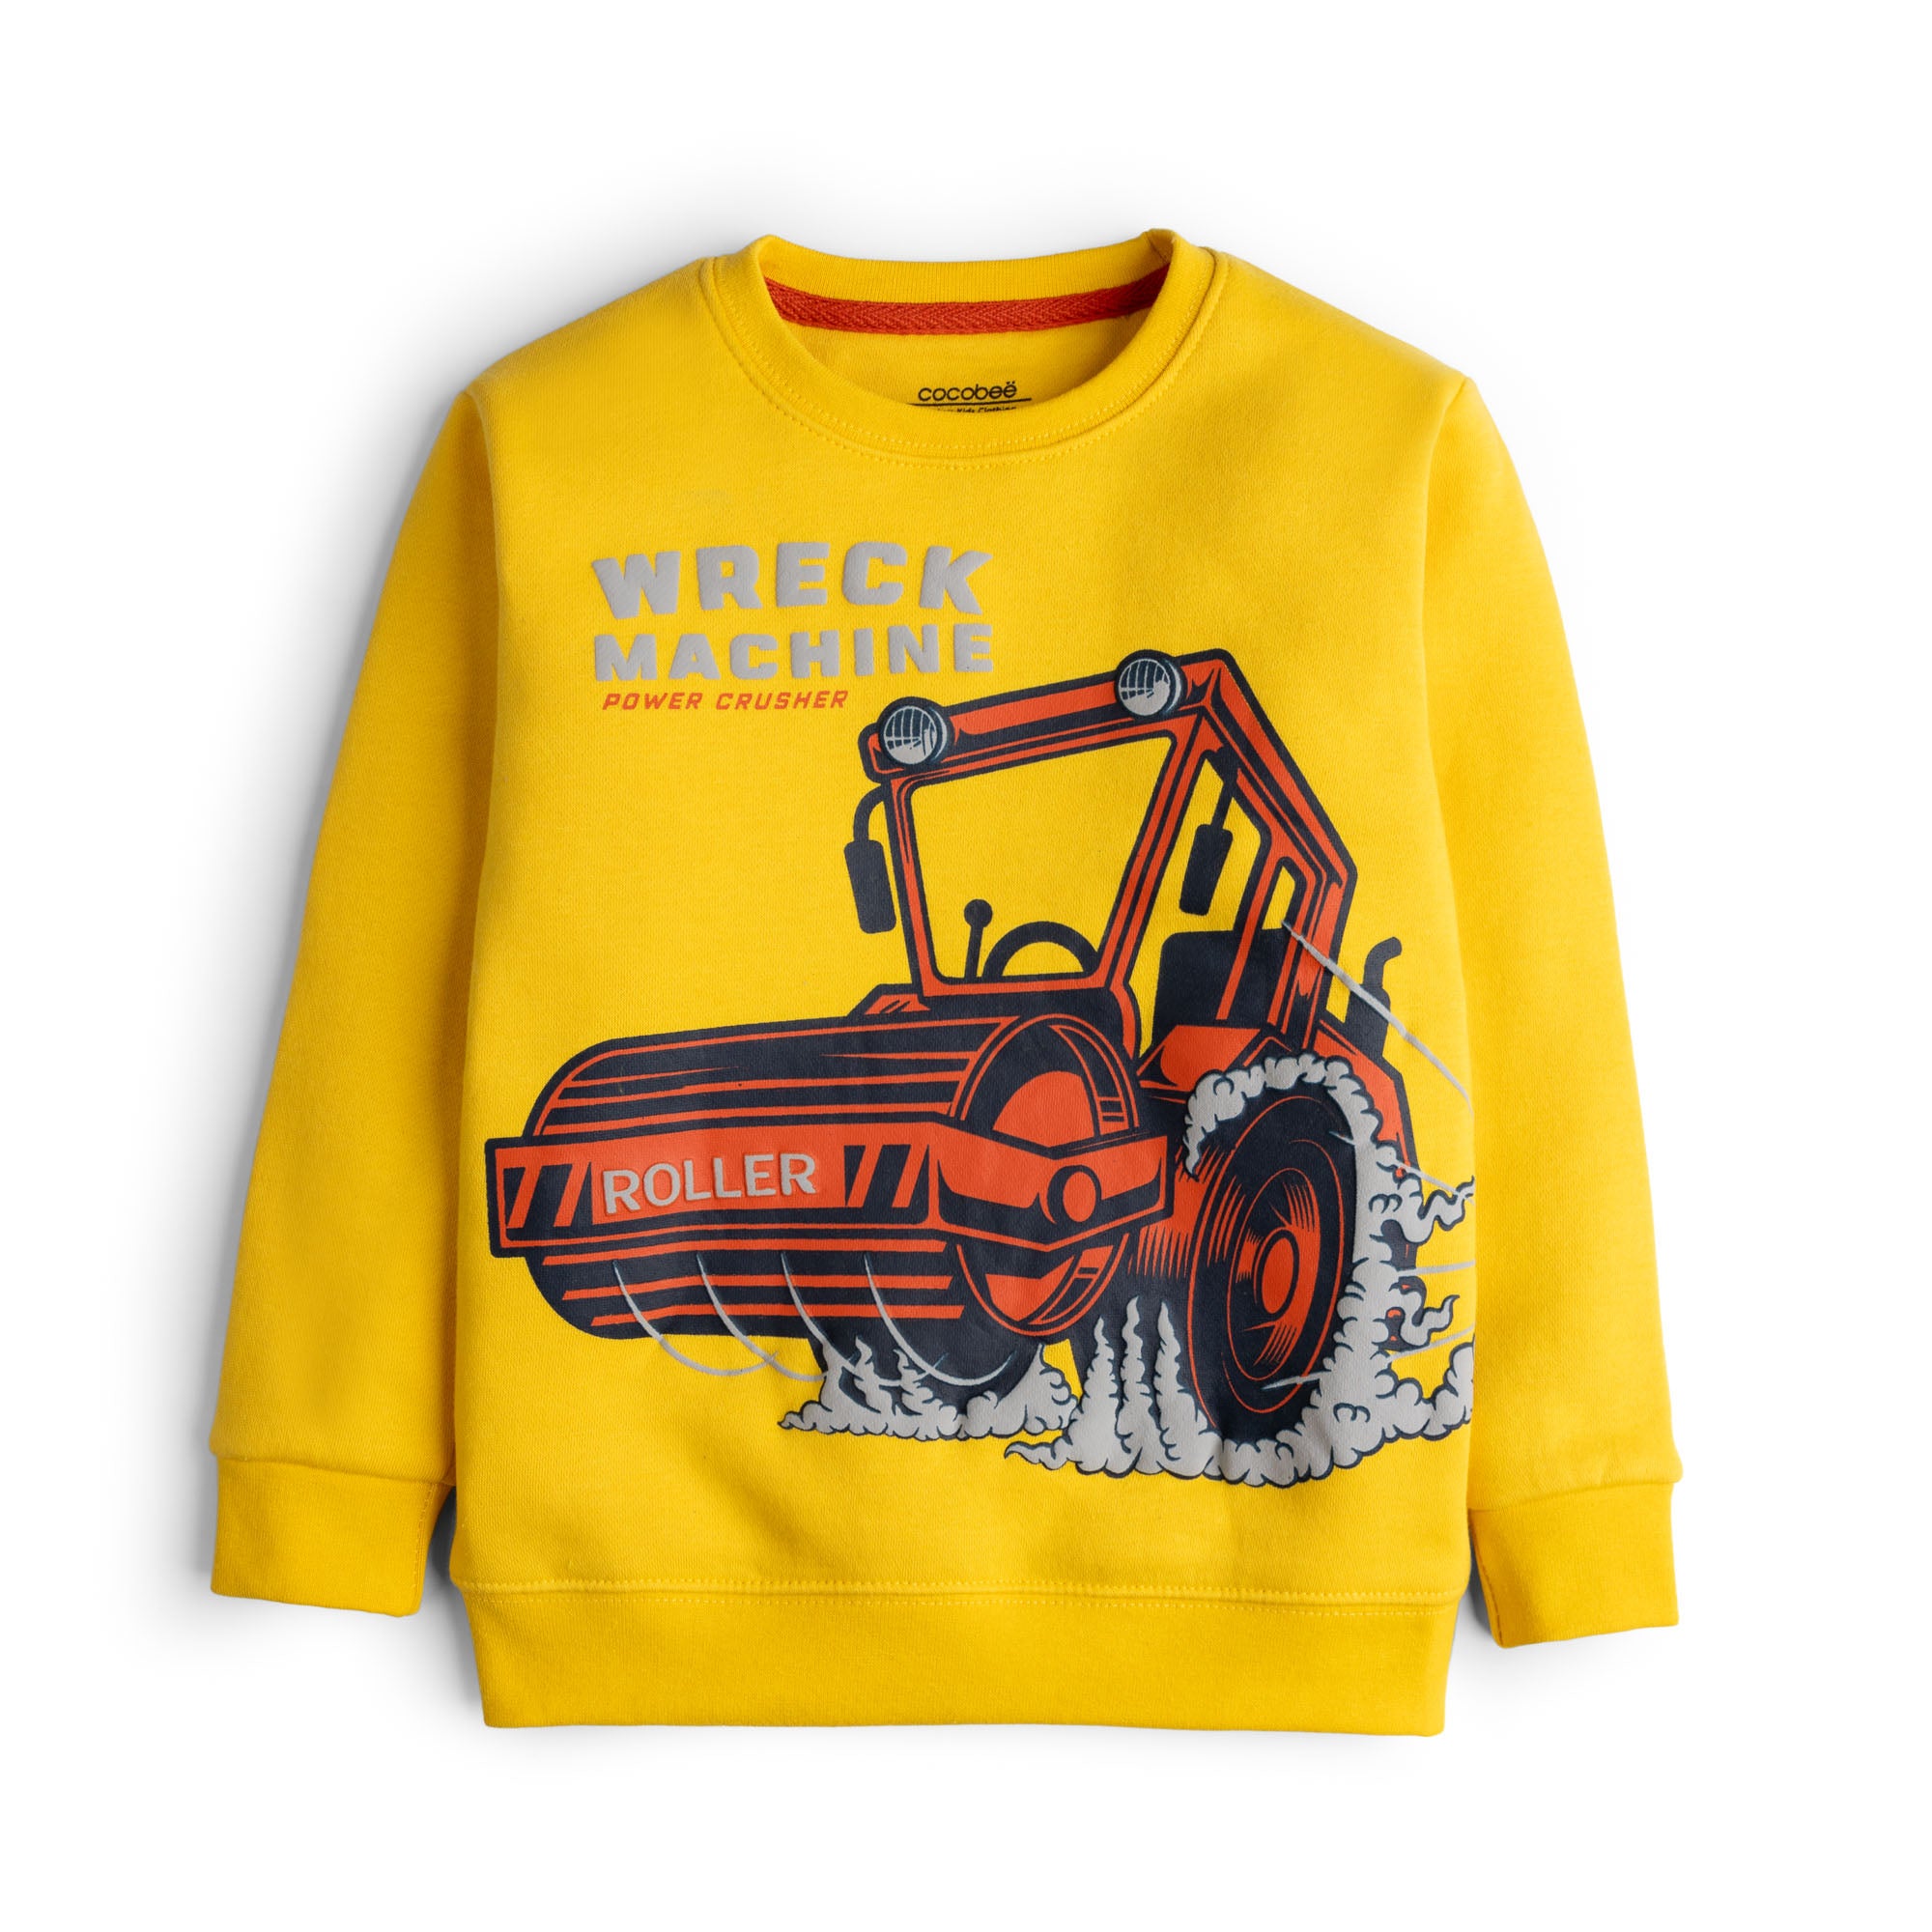 Powering Yellow Sweatshirt